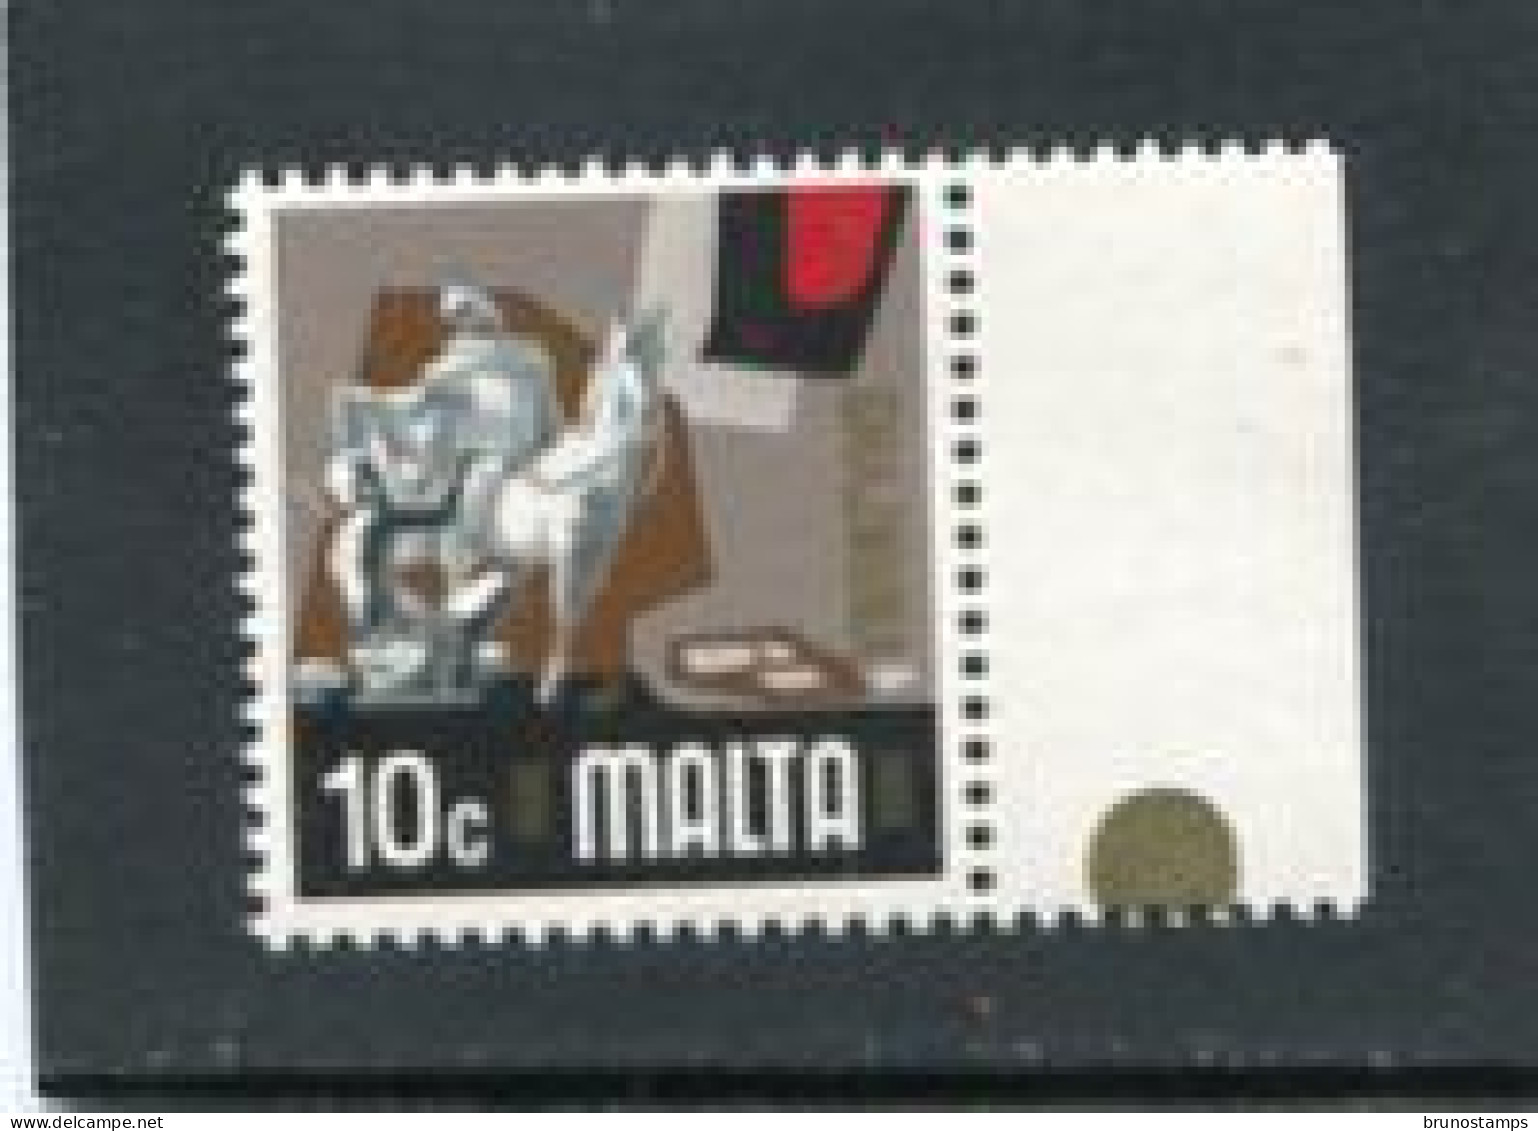 MALTA - 1973  10c  DEFINITIVE  MINT NH - Malta